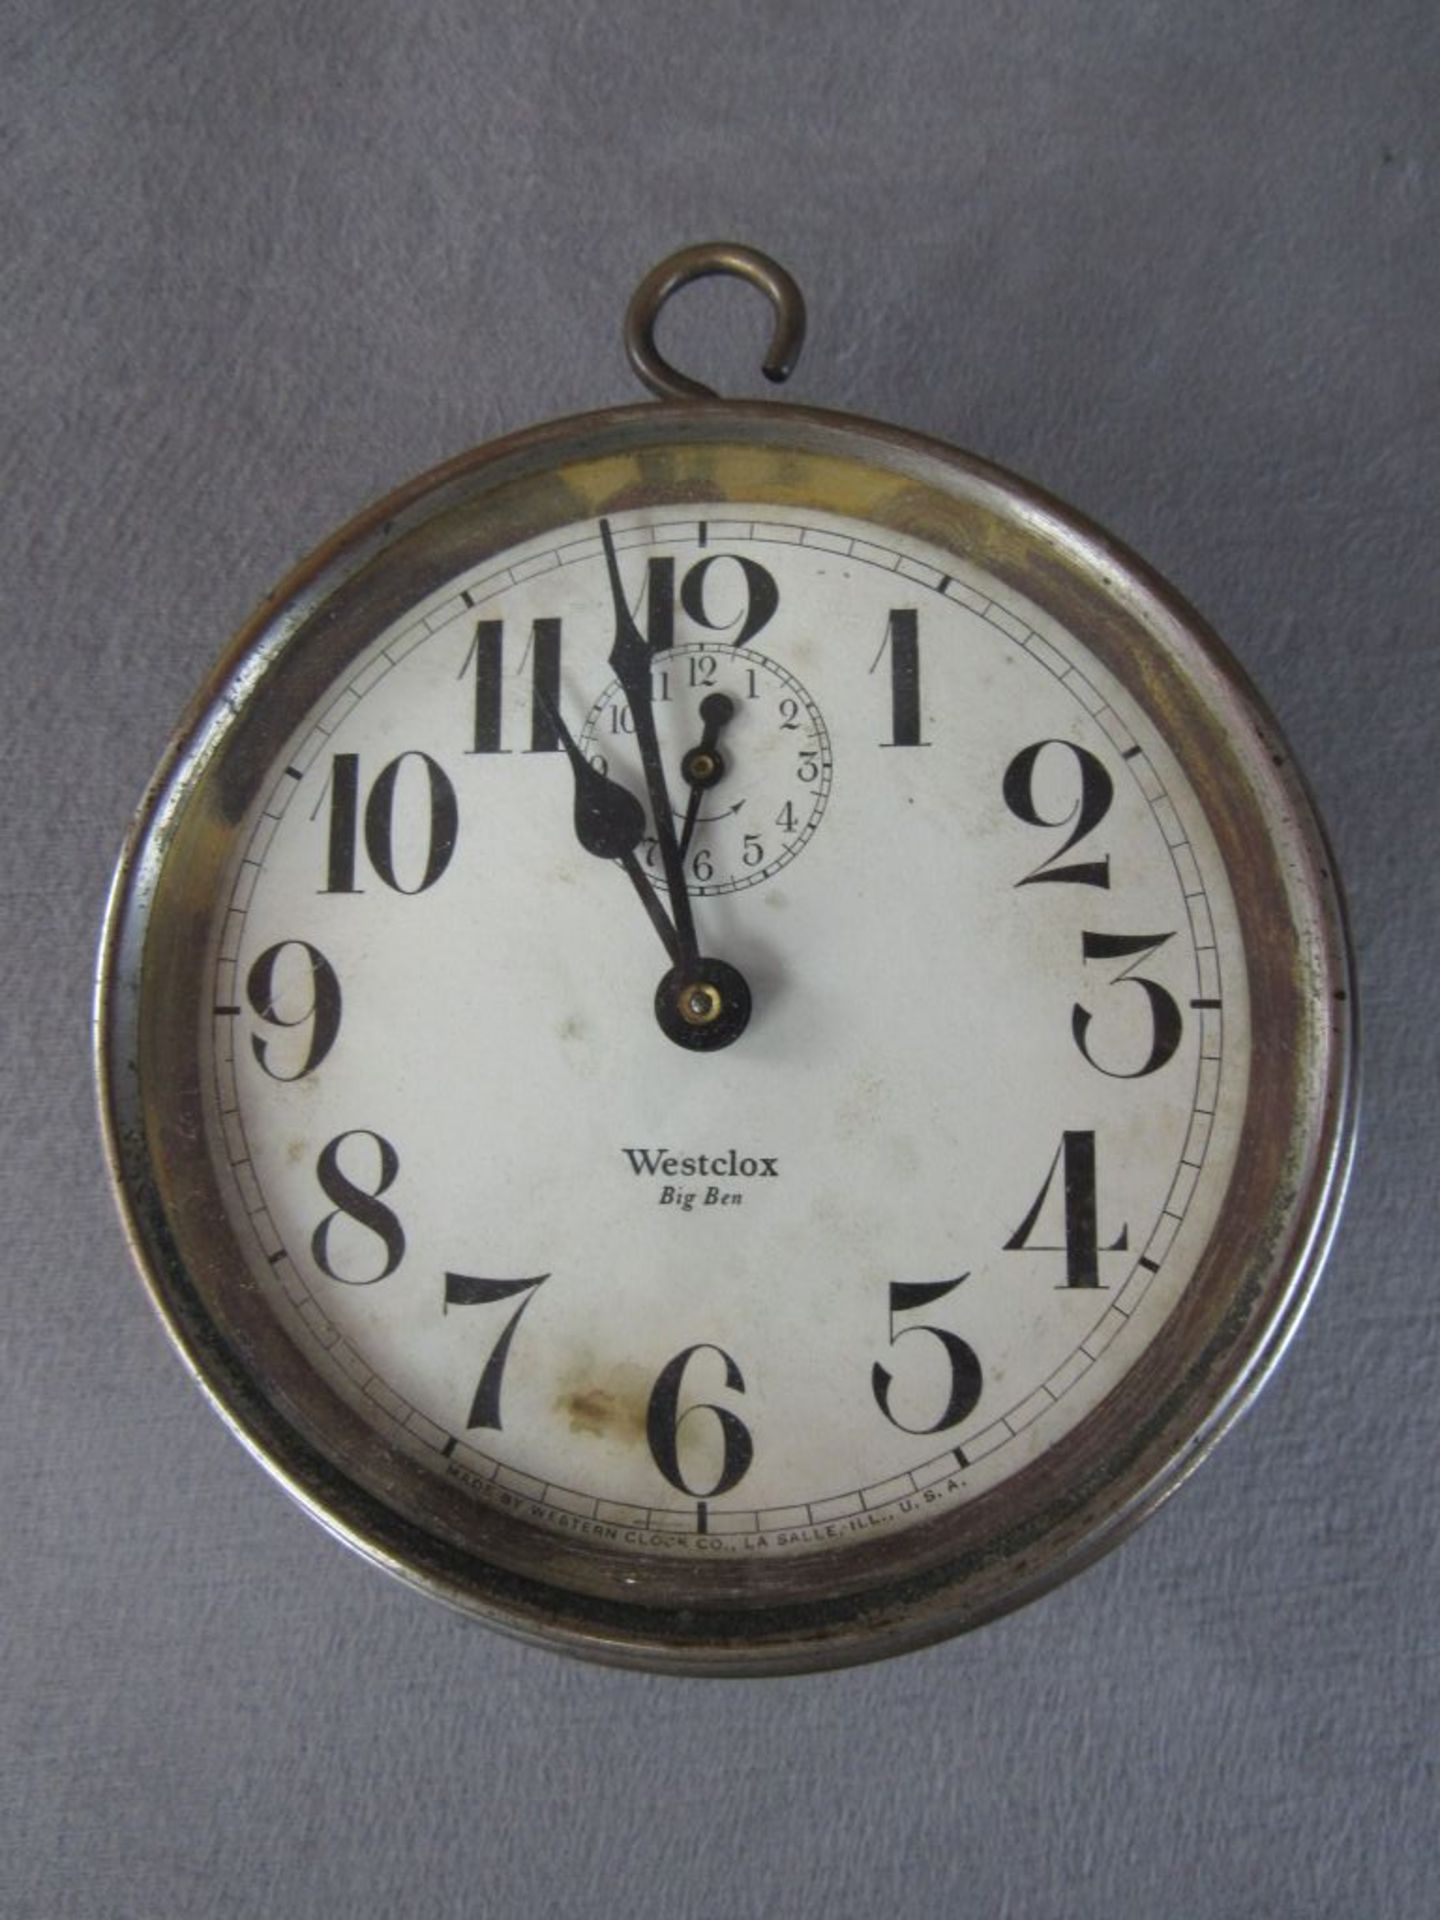 Uhr Westclox Big Ben um 1900 13,5cm Durchmesser